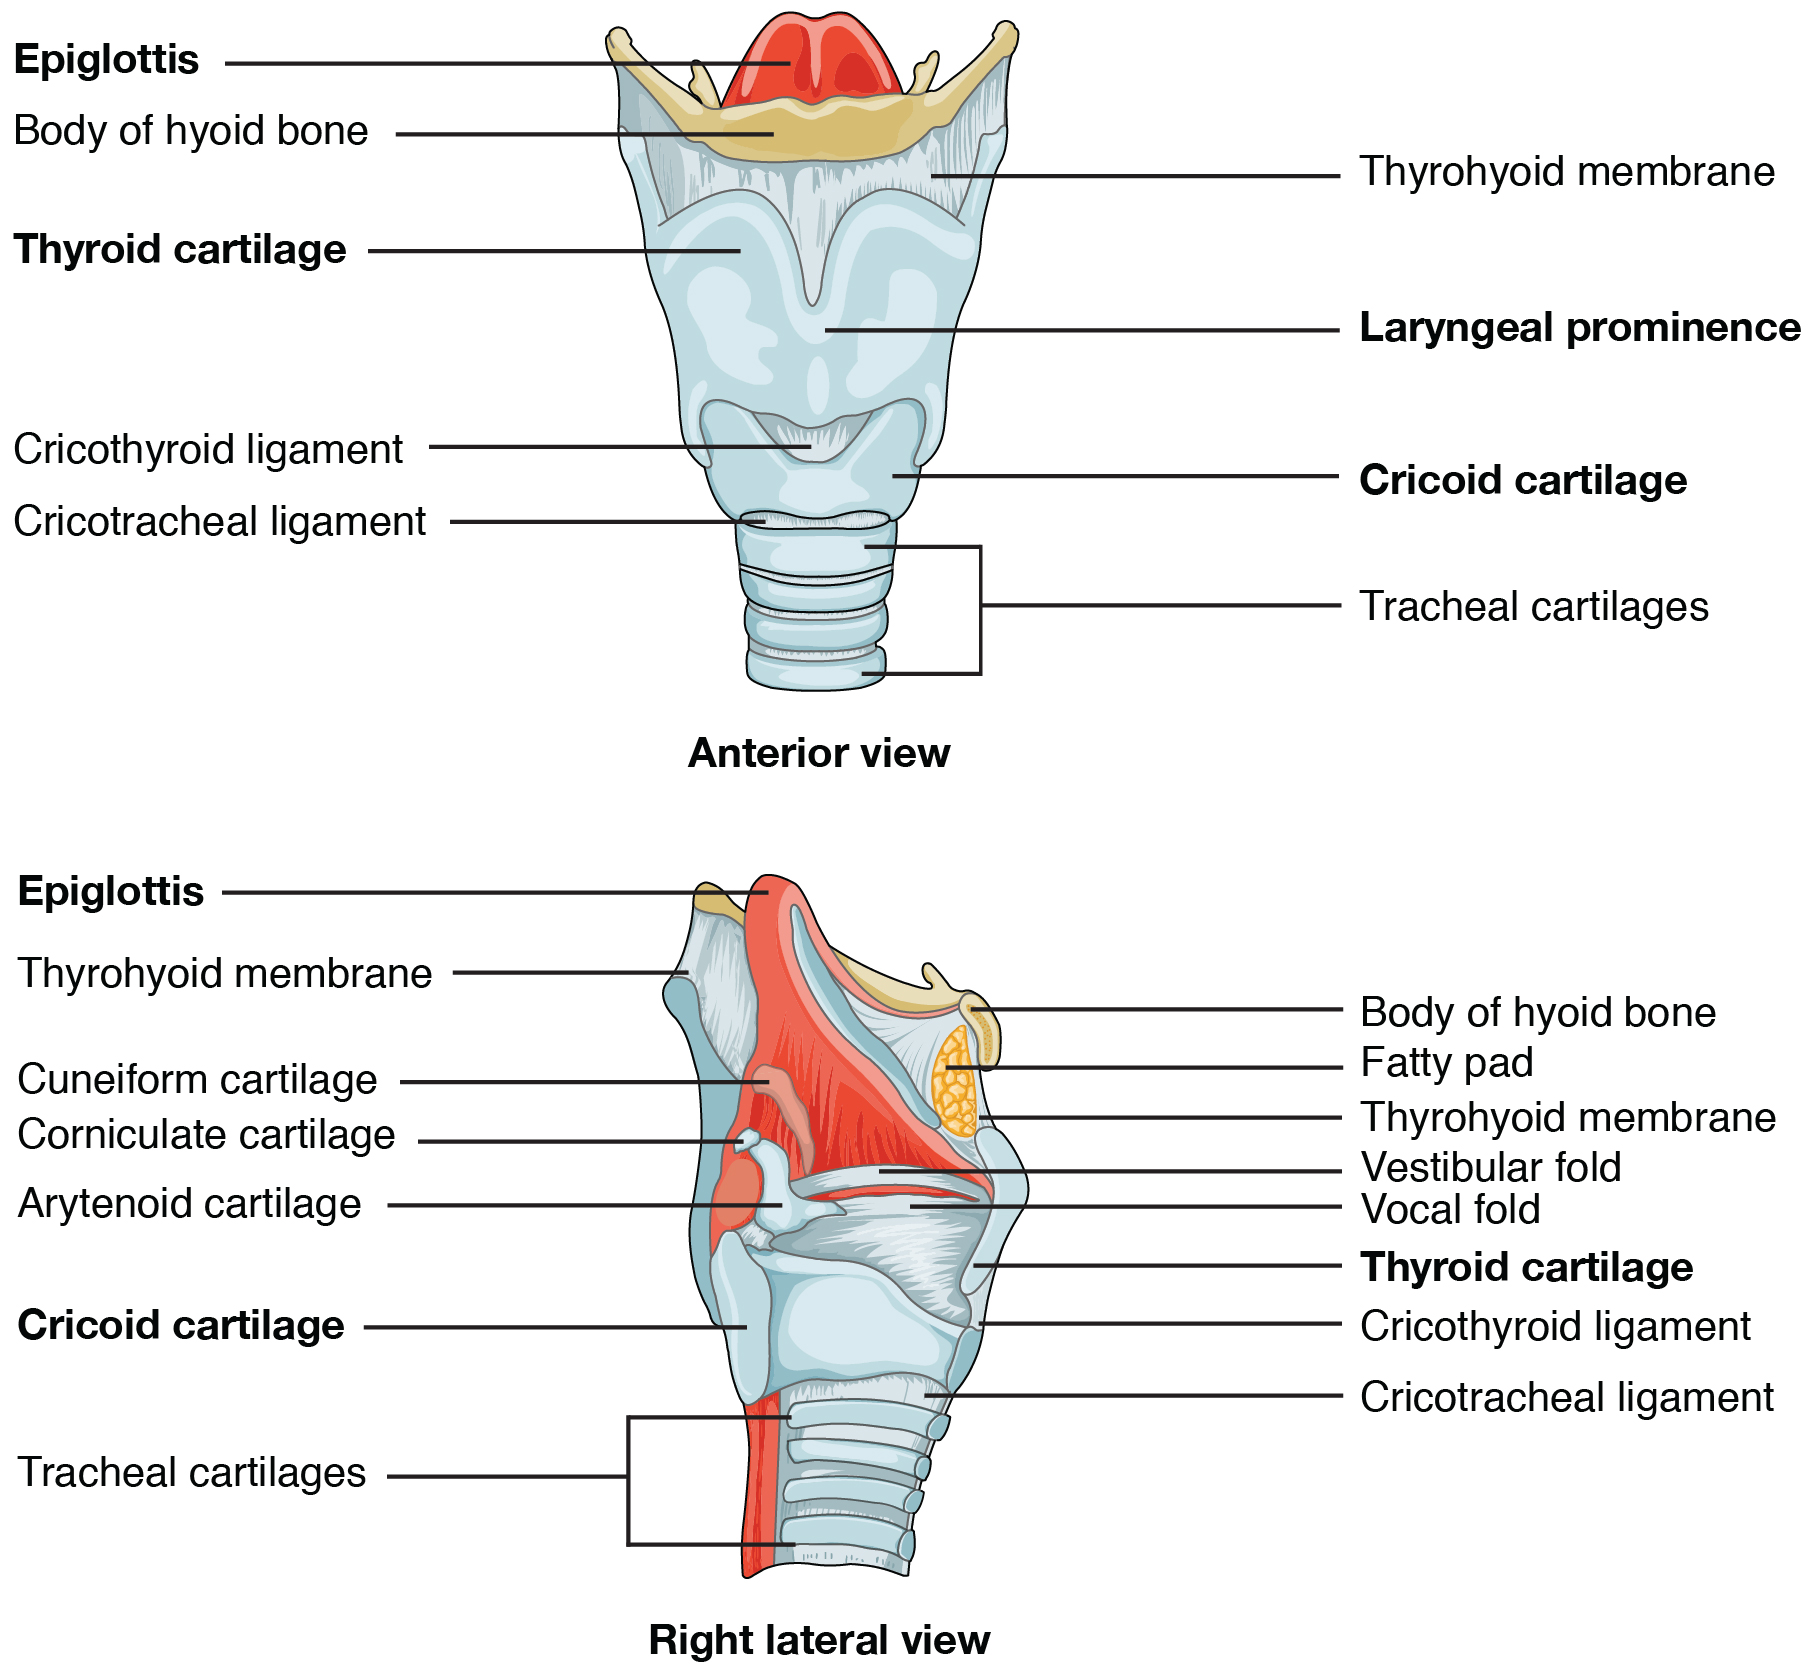 El panel superior de esta figura muestra la vista anterior de la laringe, y el panel inferior muestra la vista lateral derecha de la laringe.